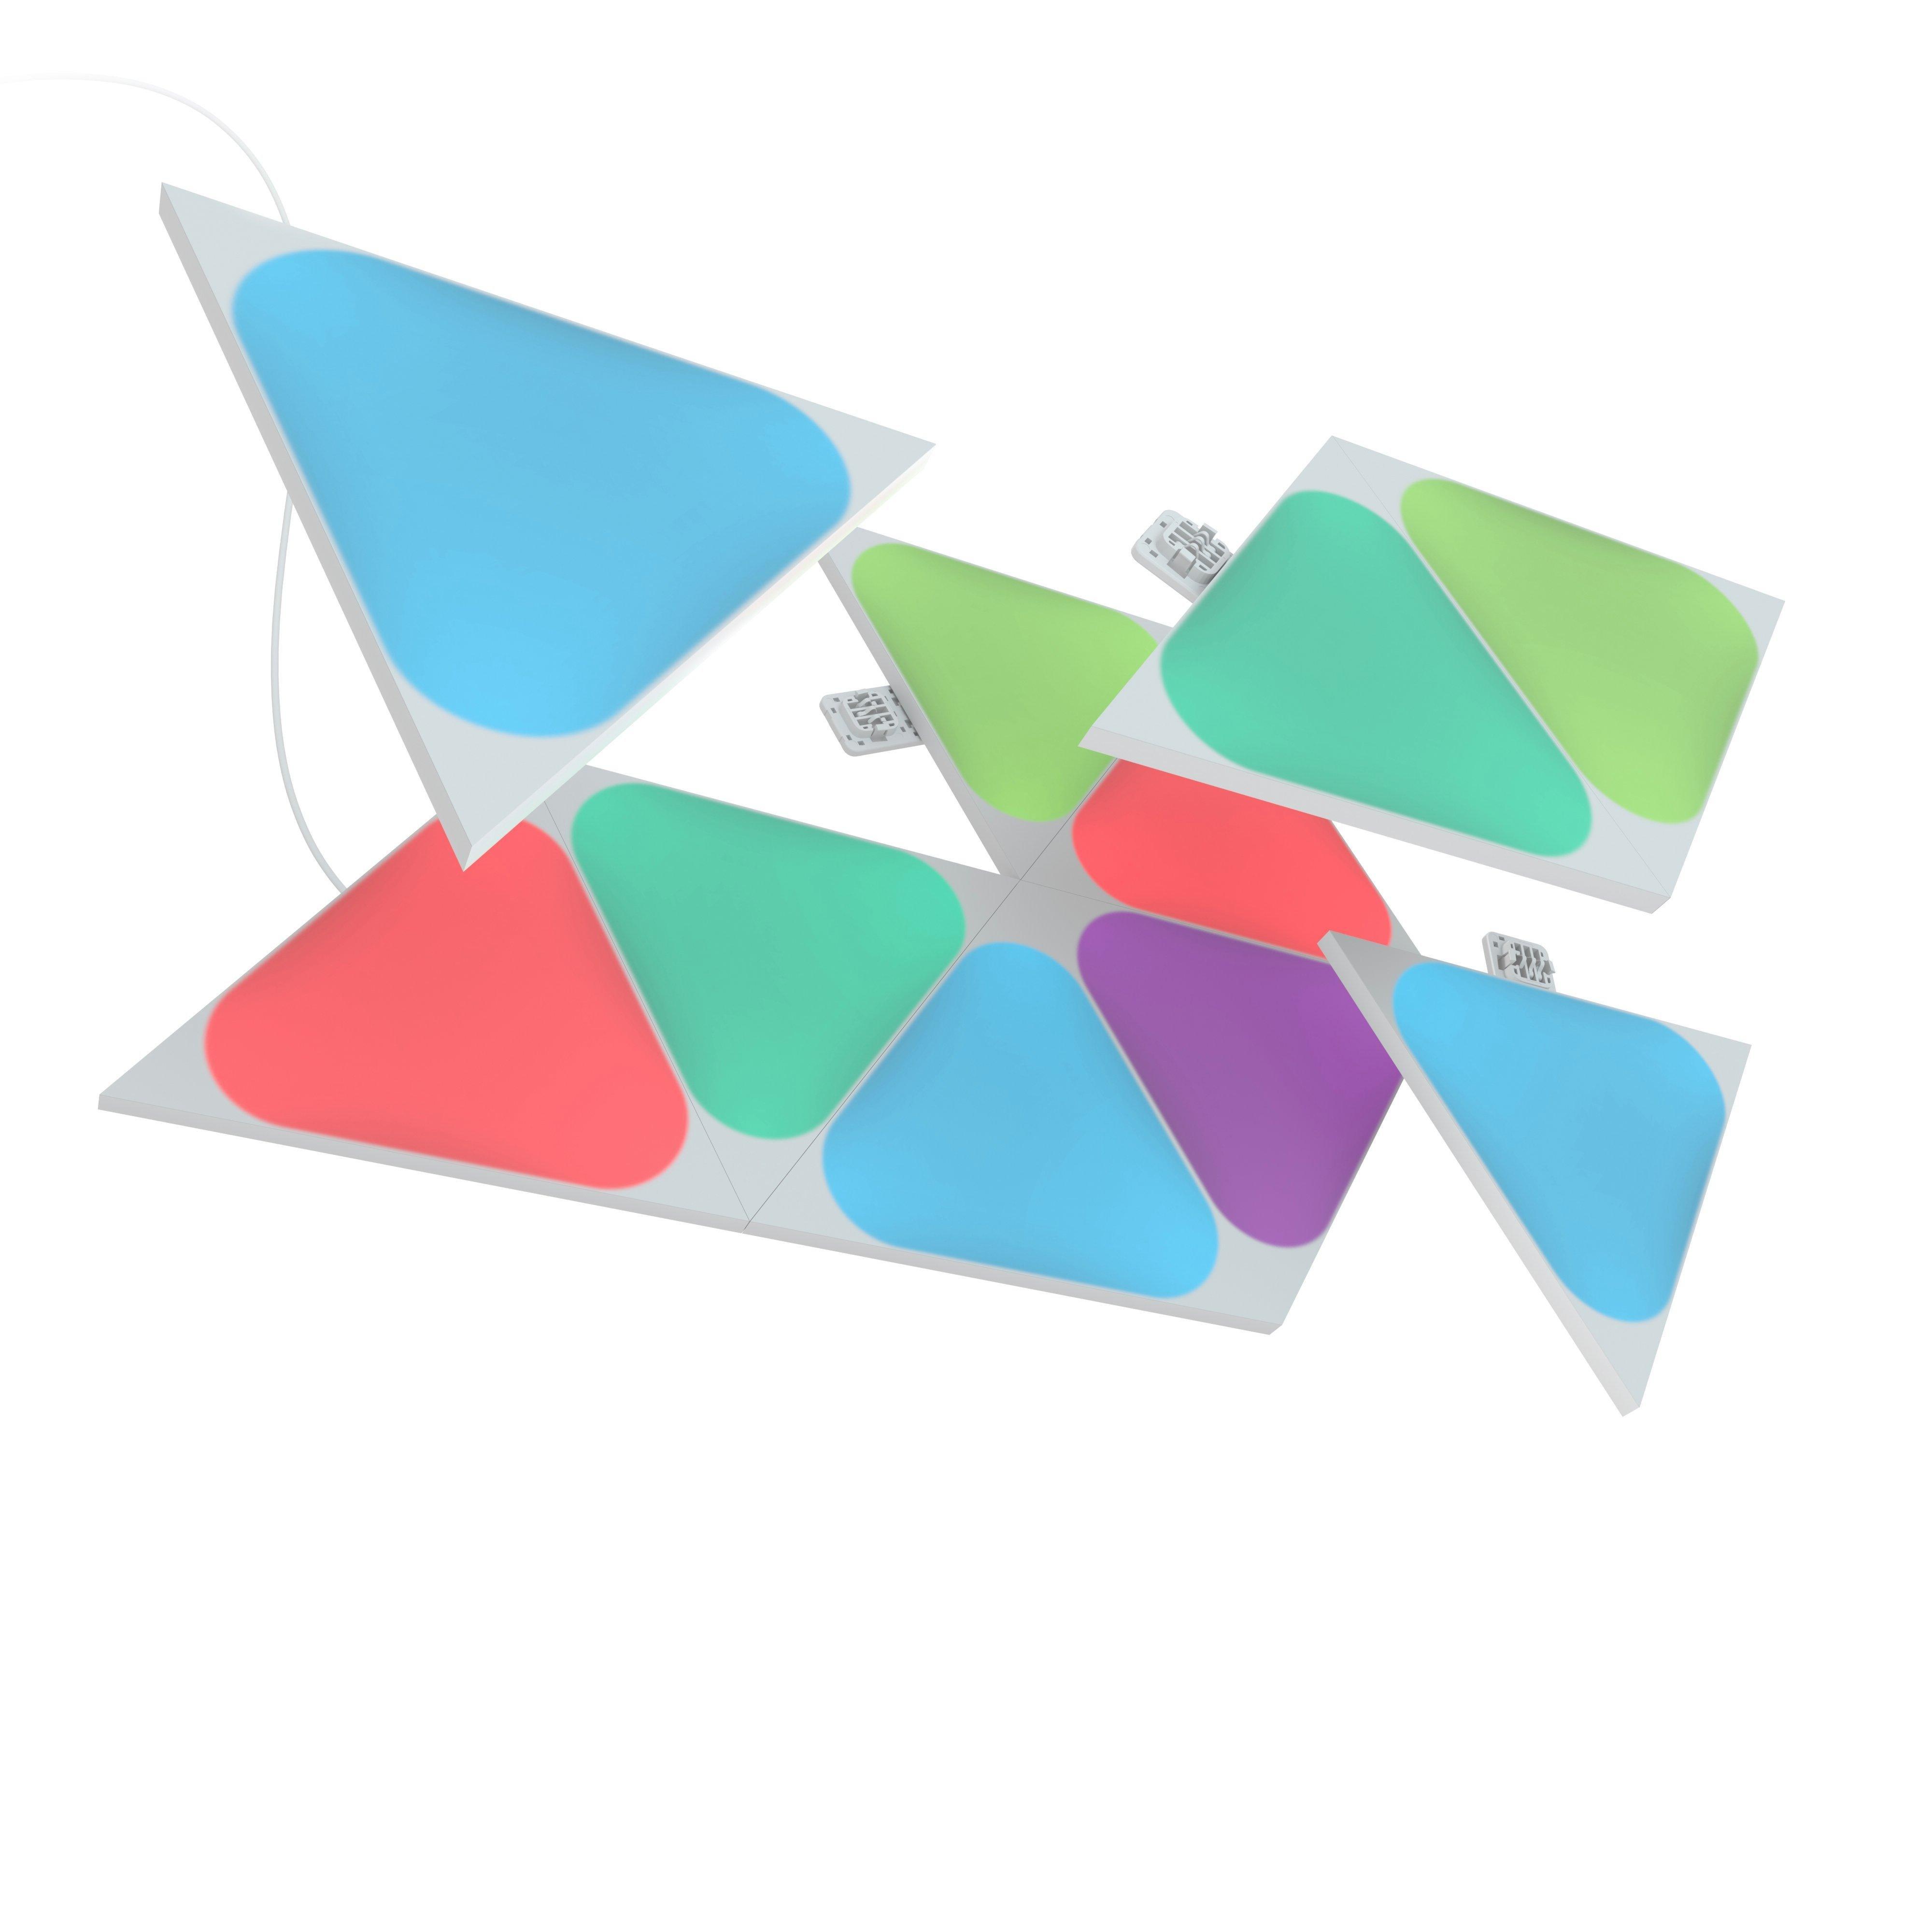 Light Mini Nanoleaf GameStop Expansion Pack 10 Panels Pack Triangles Shapes |